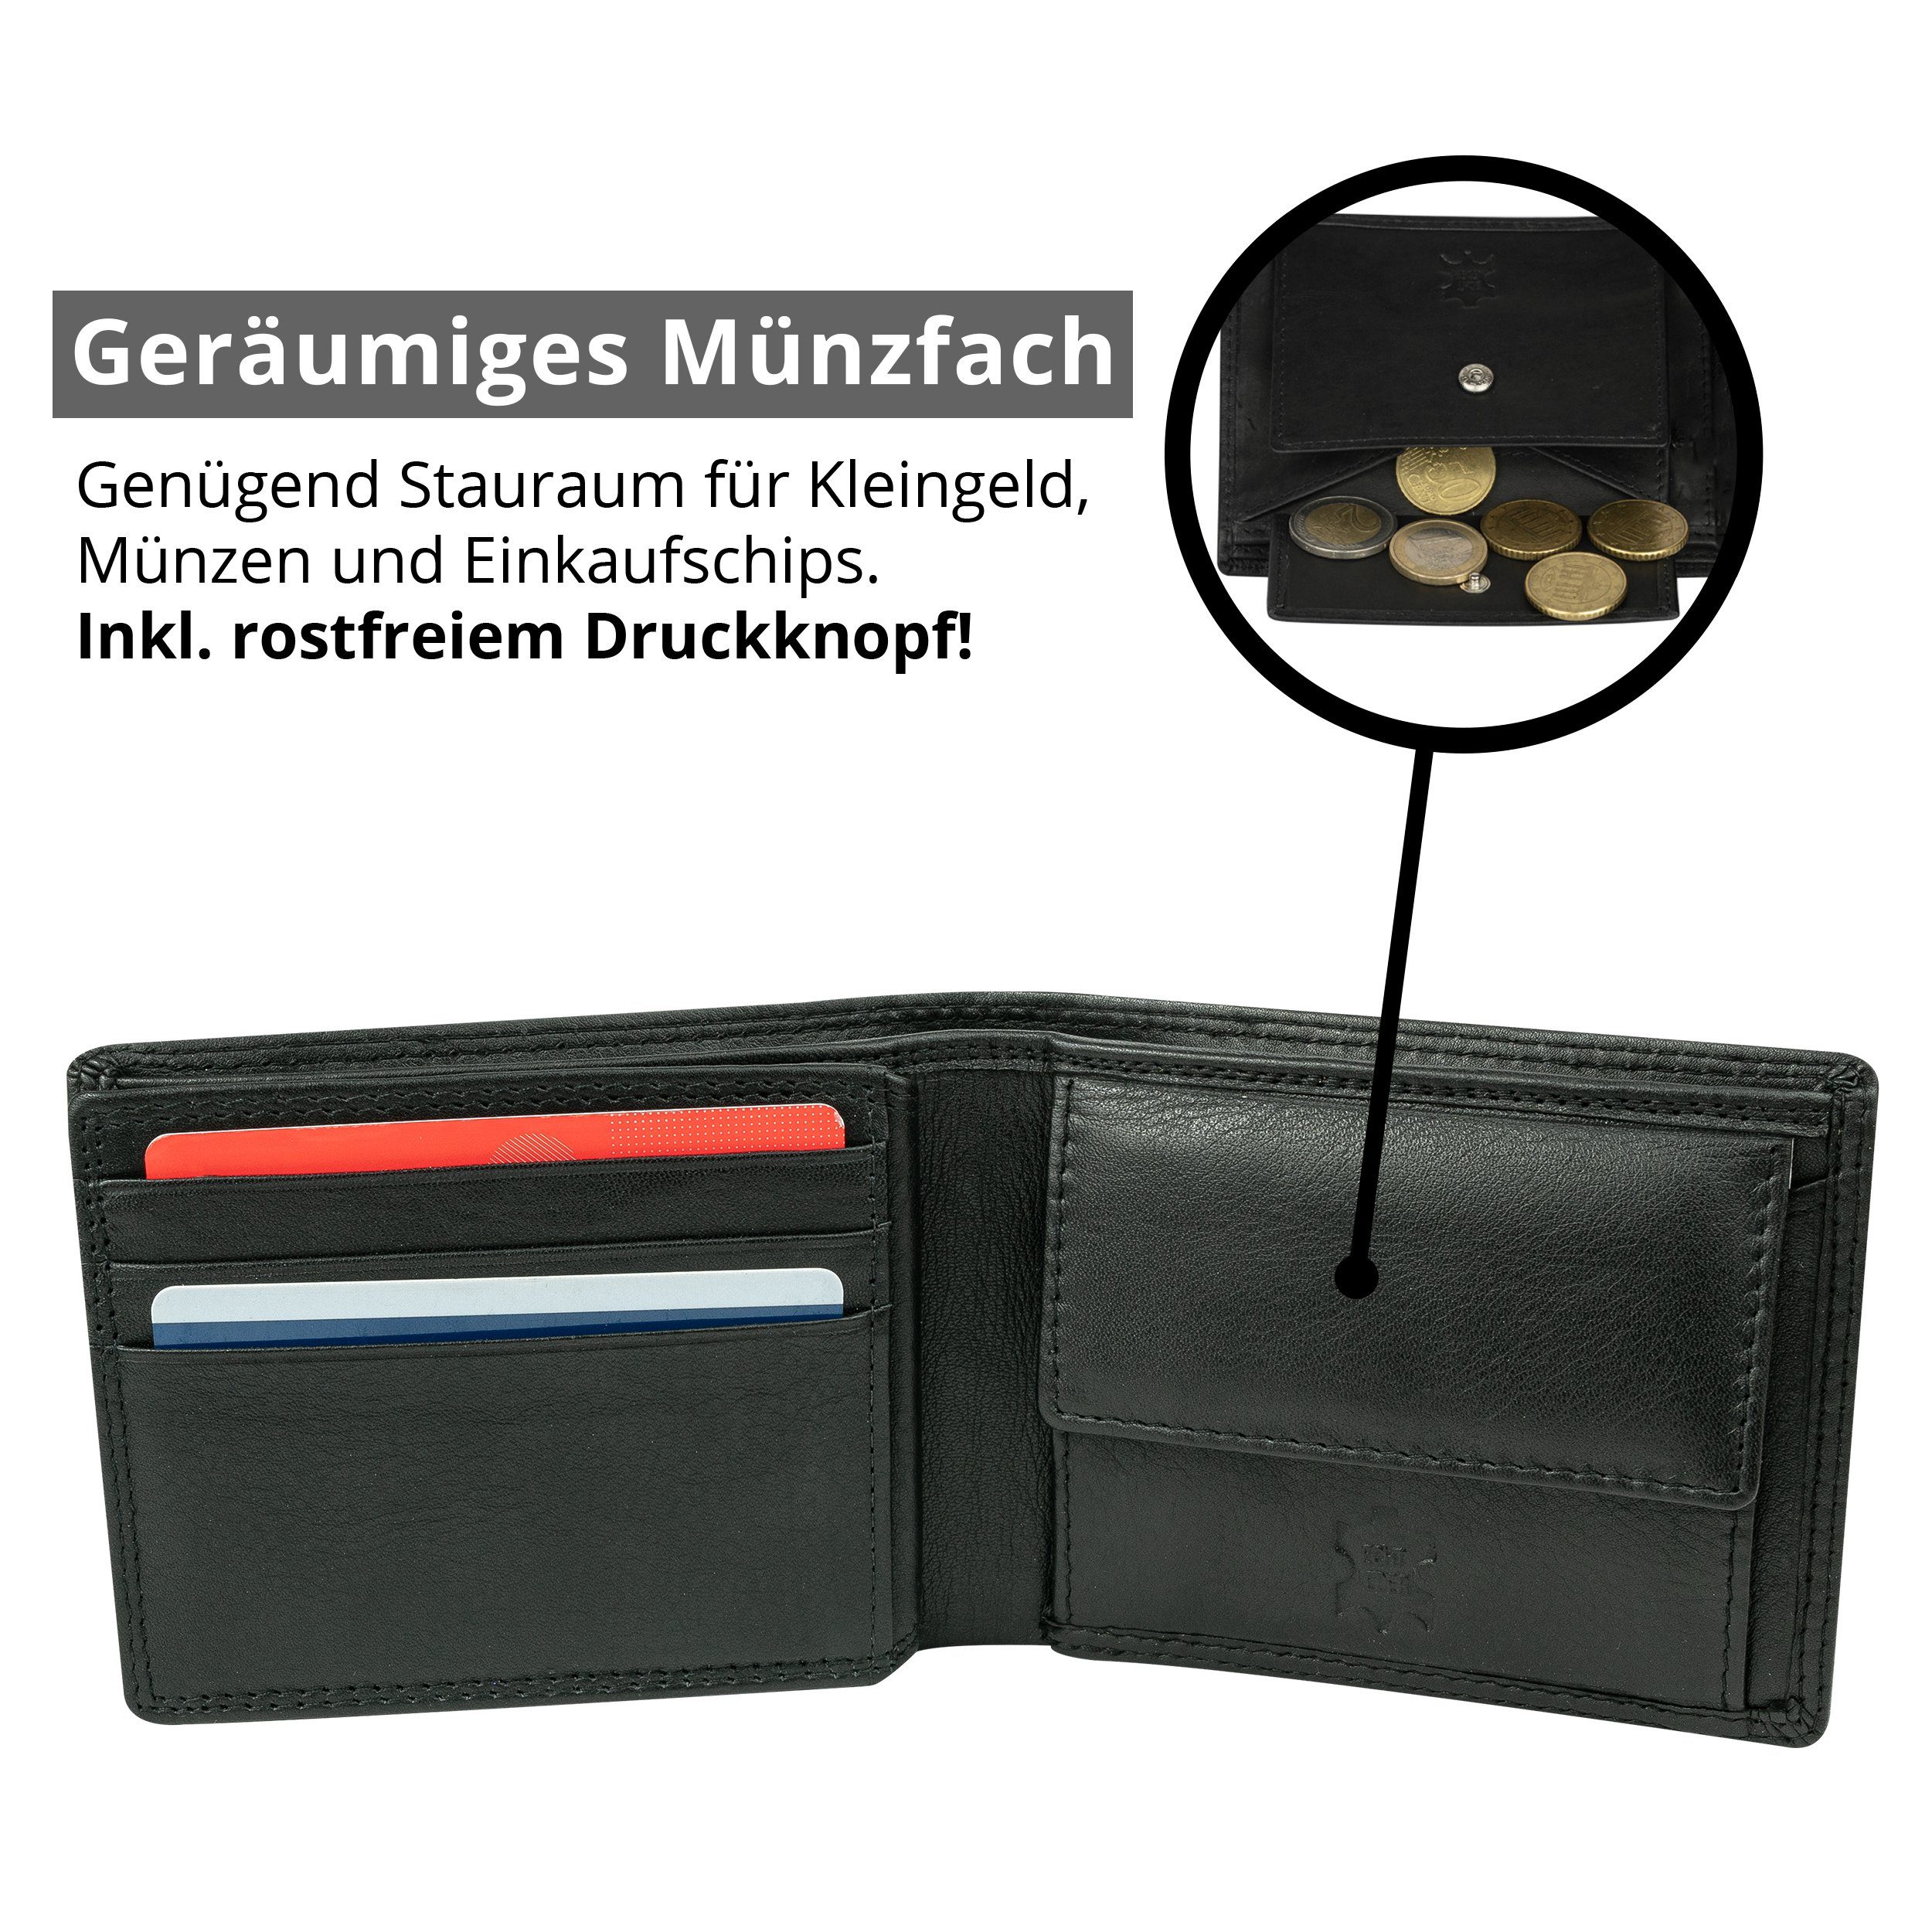 Portemonnaie Herren RFID-/NFC-Schutz Nappa-Leder, (querformat), Nappa MOKIES 100% Geldbörse GN109 Echt-Leder, Premium Premium